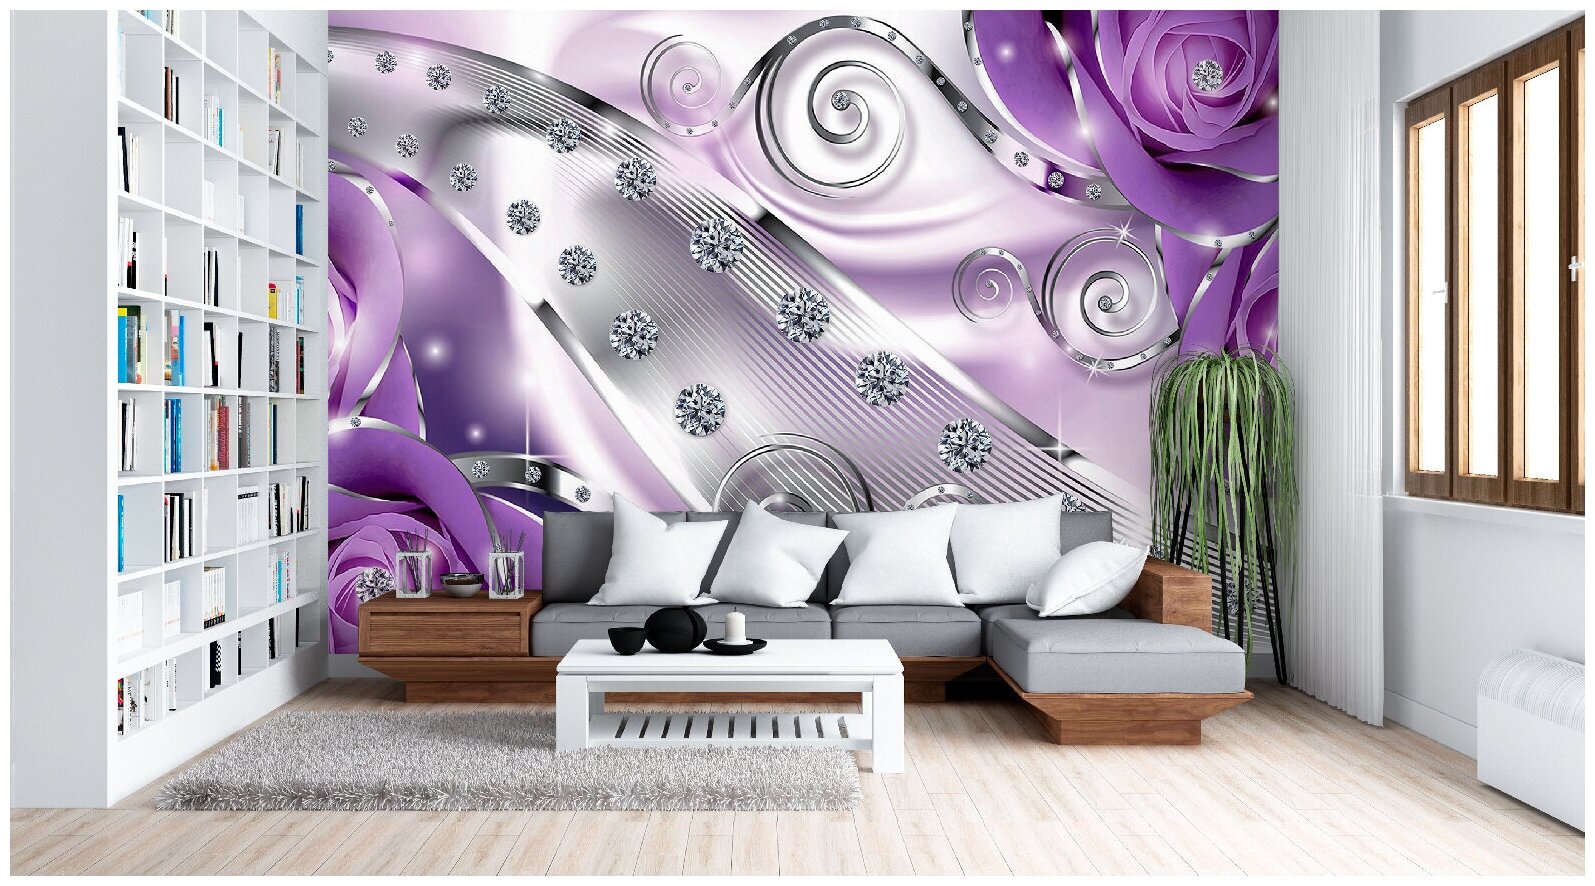 Фотообои / флизелиновые обои 3D розы и стразы в фиолетовом 4 x 27 м